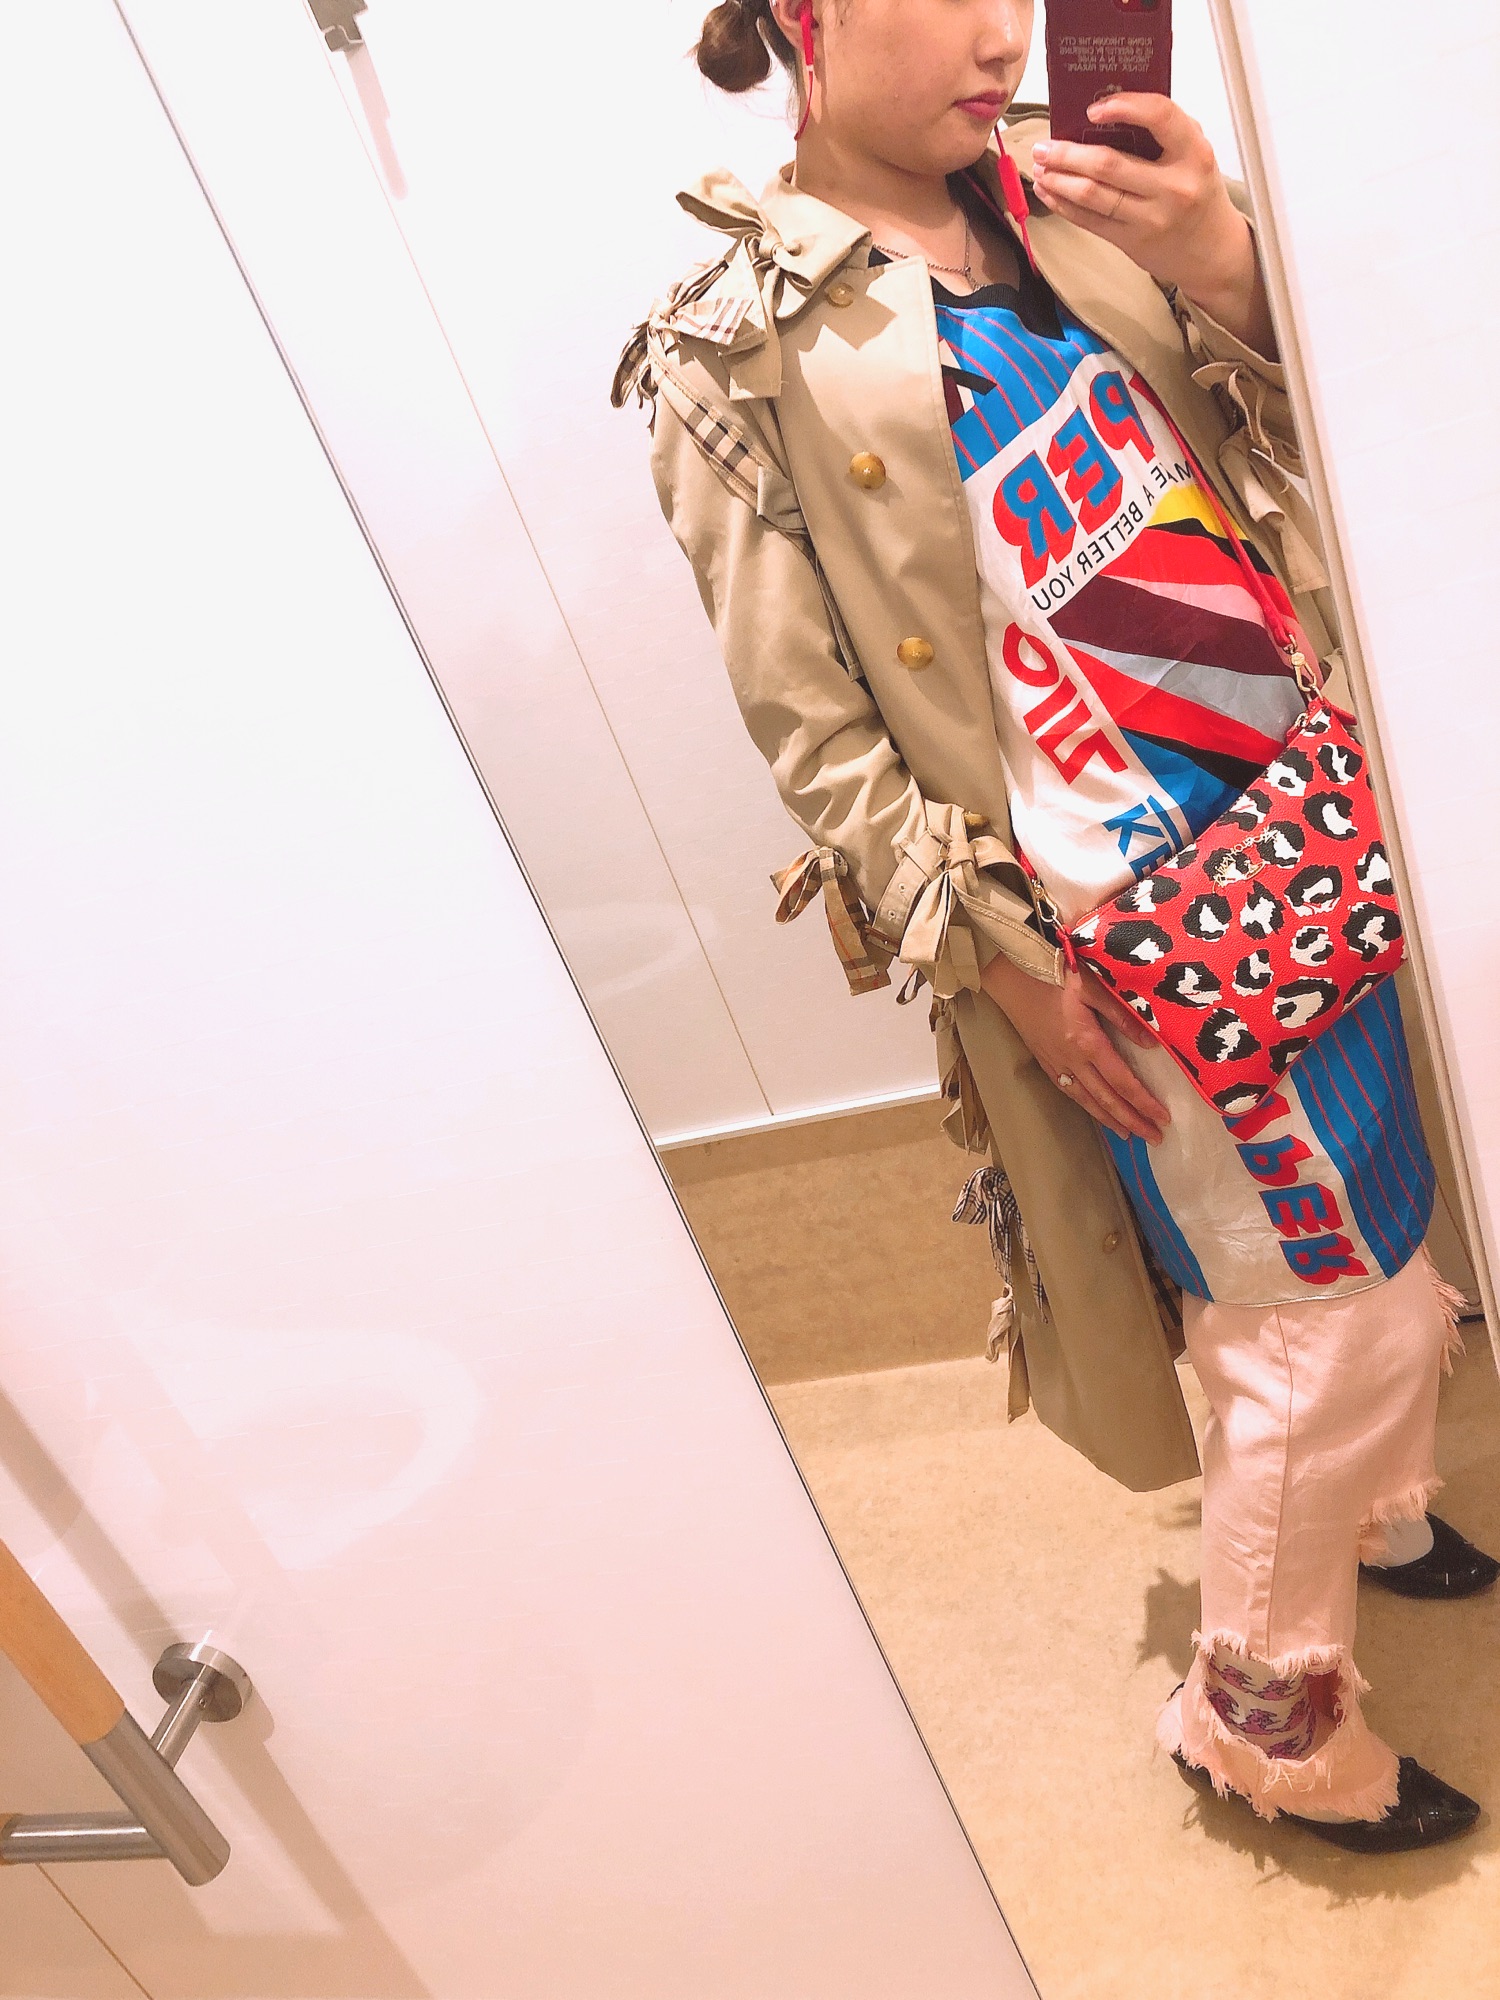 keisuke kandaのトレンチコートを使った人気ファッション 